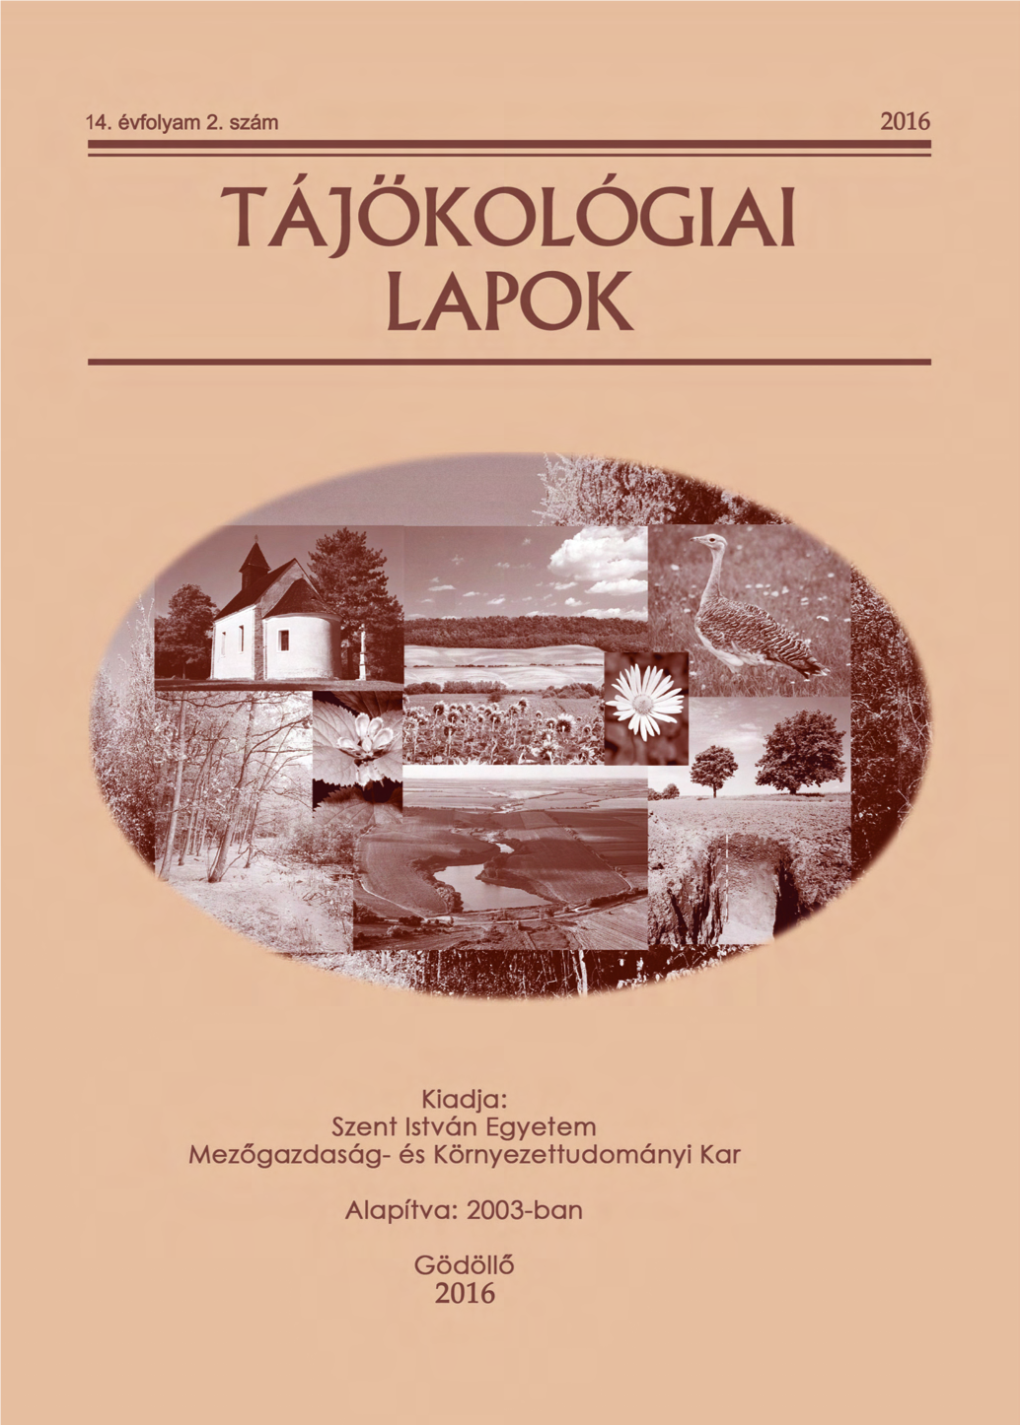 Tájökológiai Lapok Journal of Landscape Ecology